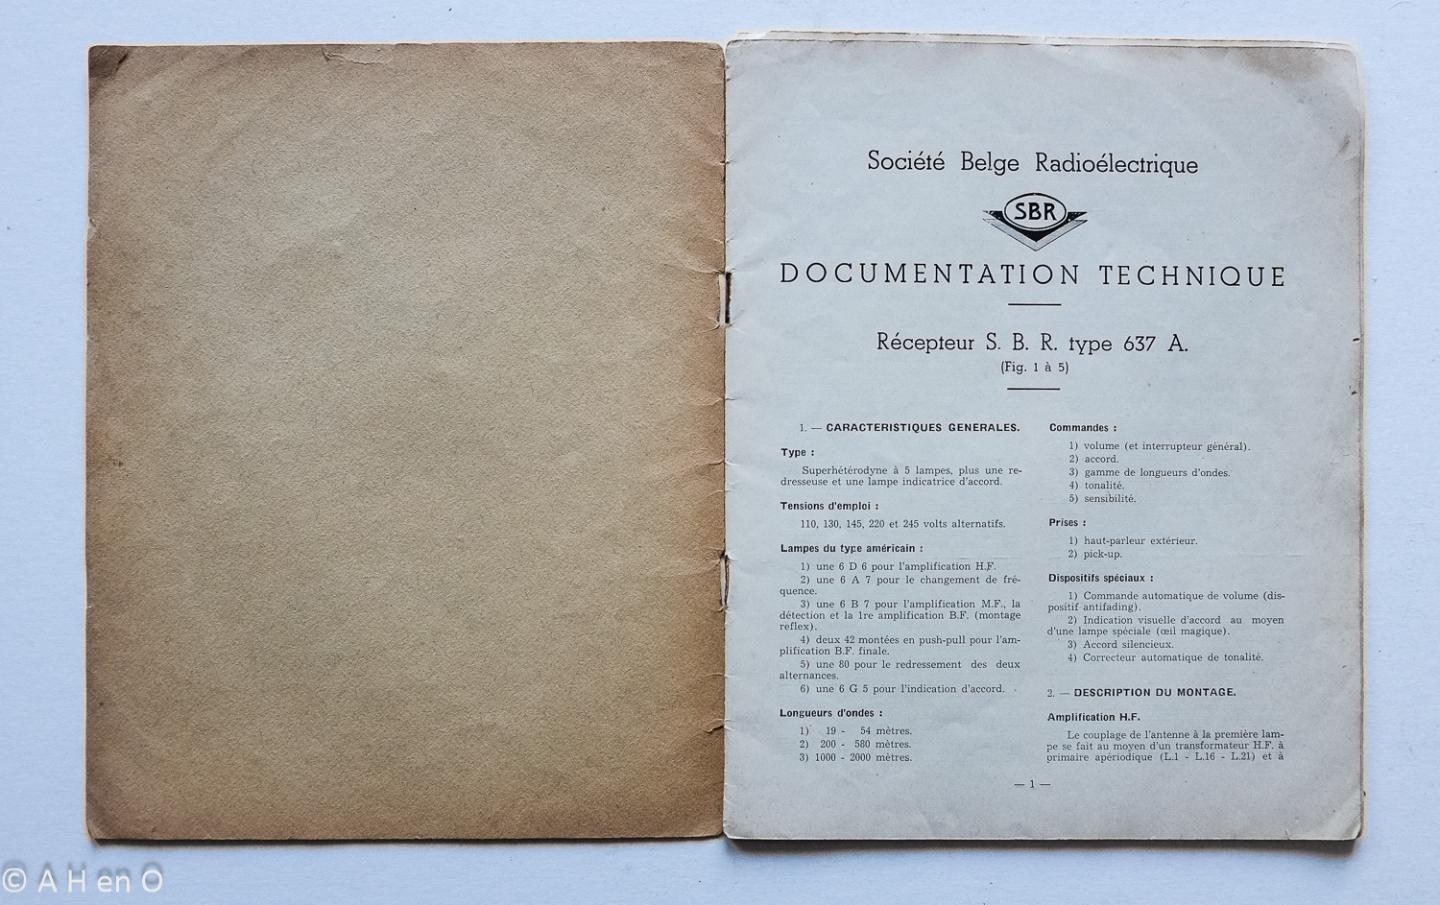 SBR Société Belge Radio-Electrique, Bruxelles - Technische documentatie Ontvanger S.B.R. Type 637 A